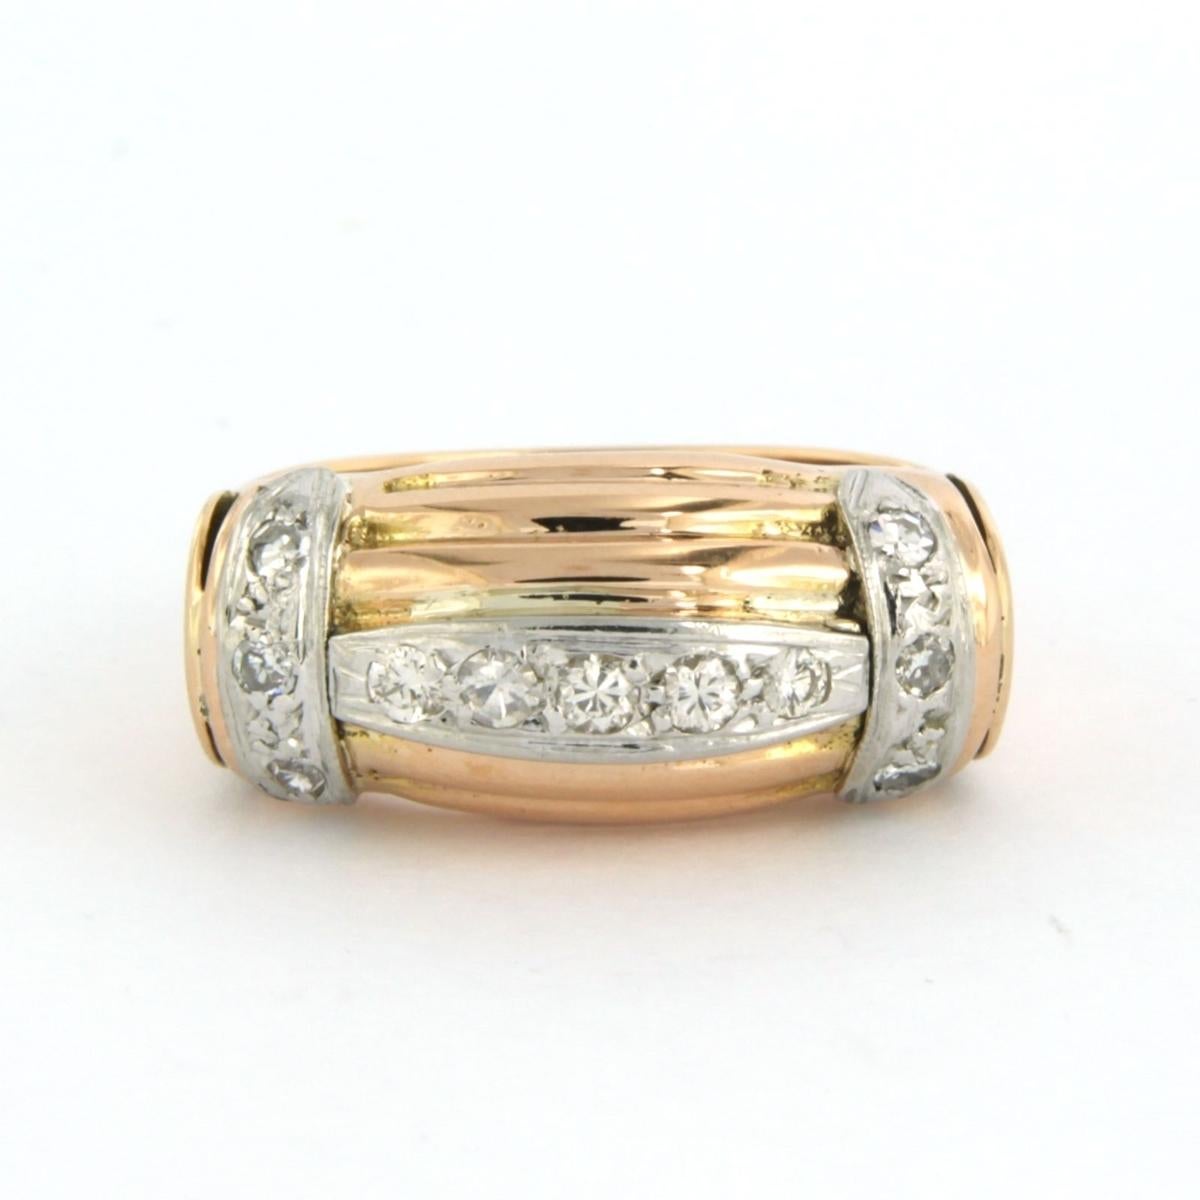 Bague en or bicolore 18 kt sertie de diamants taille brillant et taille unique. 0.20 ct - F/G - VS/SI - taille U.S. 7.25 - EU. 17.5(55)

description détaillée :

le haut de l'anneau a une largeur de 1.0 cm

Taille de l'anneau : 7,25 pour les